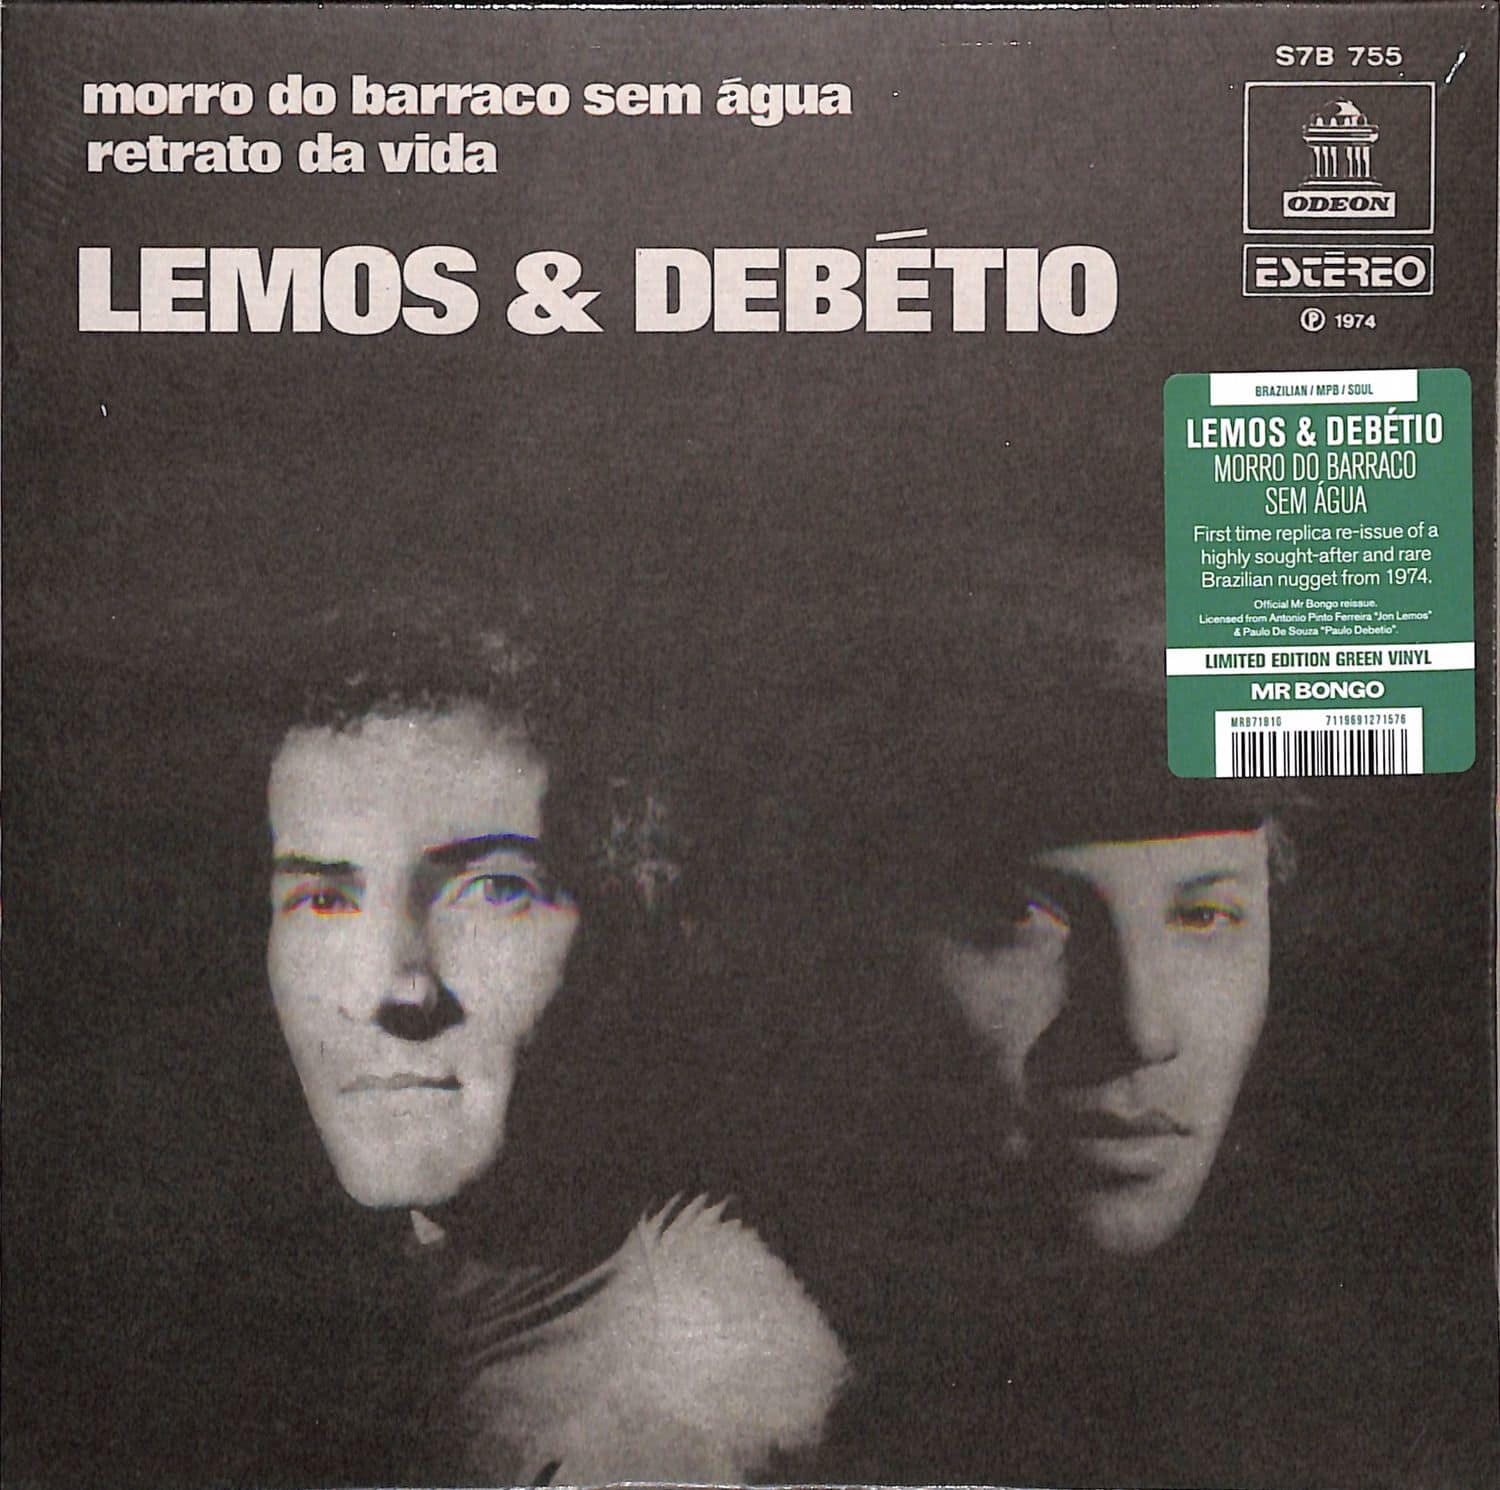 Lemos & Debetio - MORRO DO BARRACO SEM AGUA 